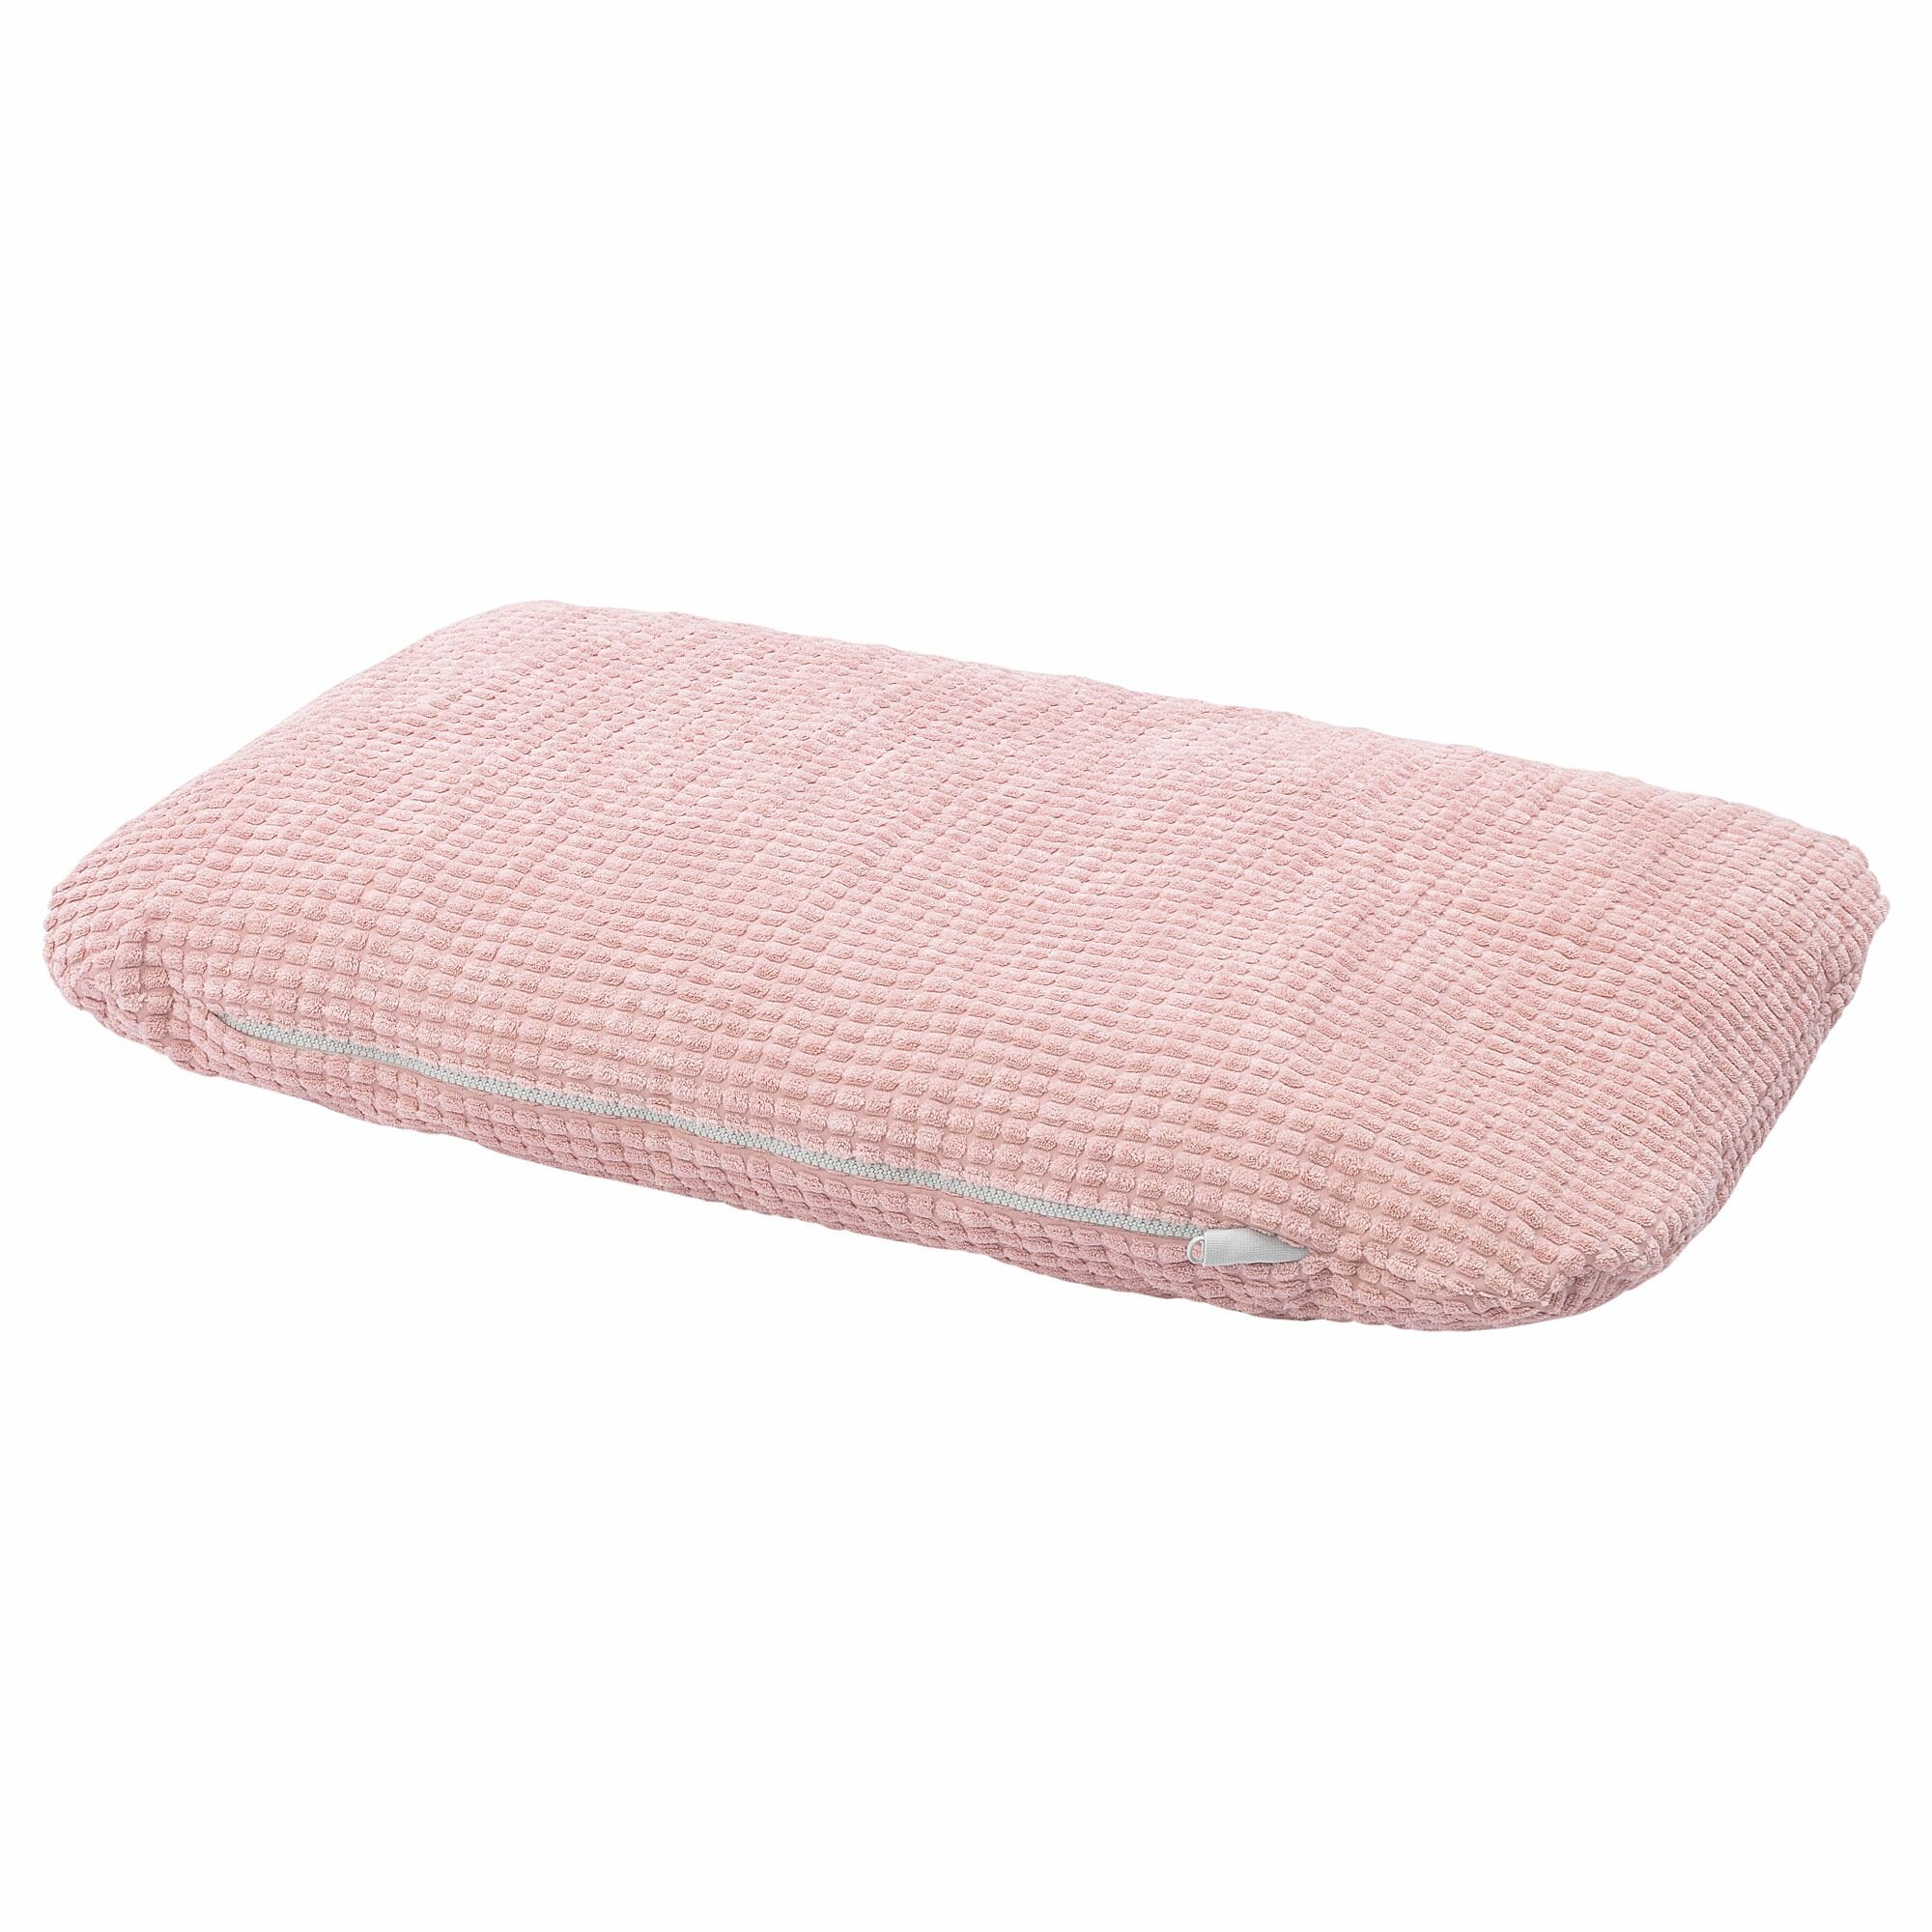 Икея / IKEA LURVIG, лурвиг, подушка, розовый, 46x74 см